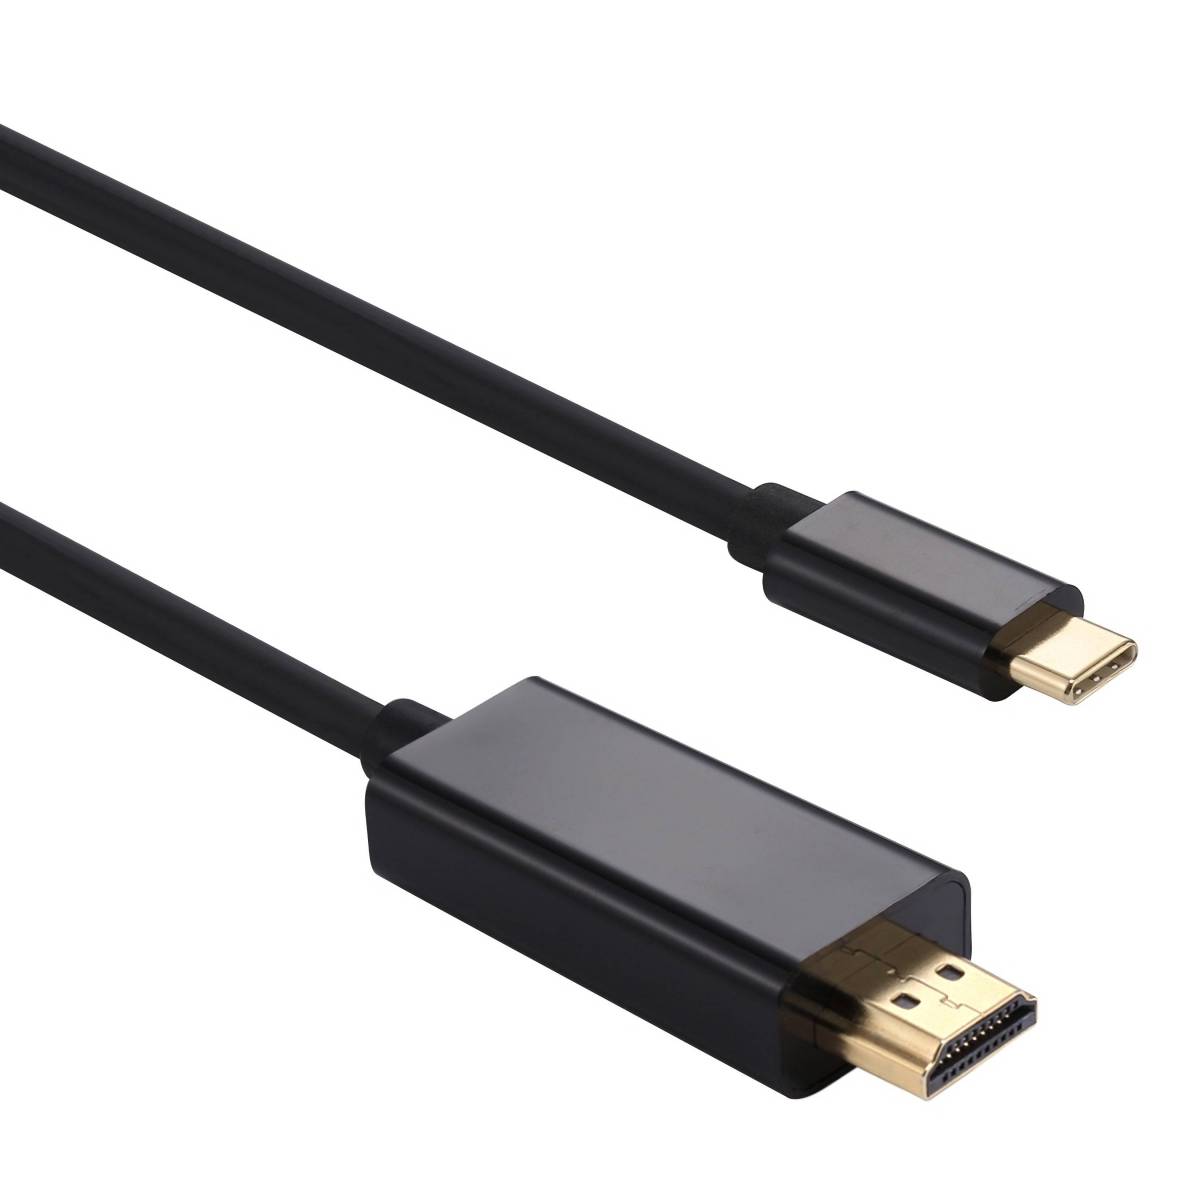 HDMI kabel 2m i sort - Dag-til-dag levering